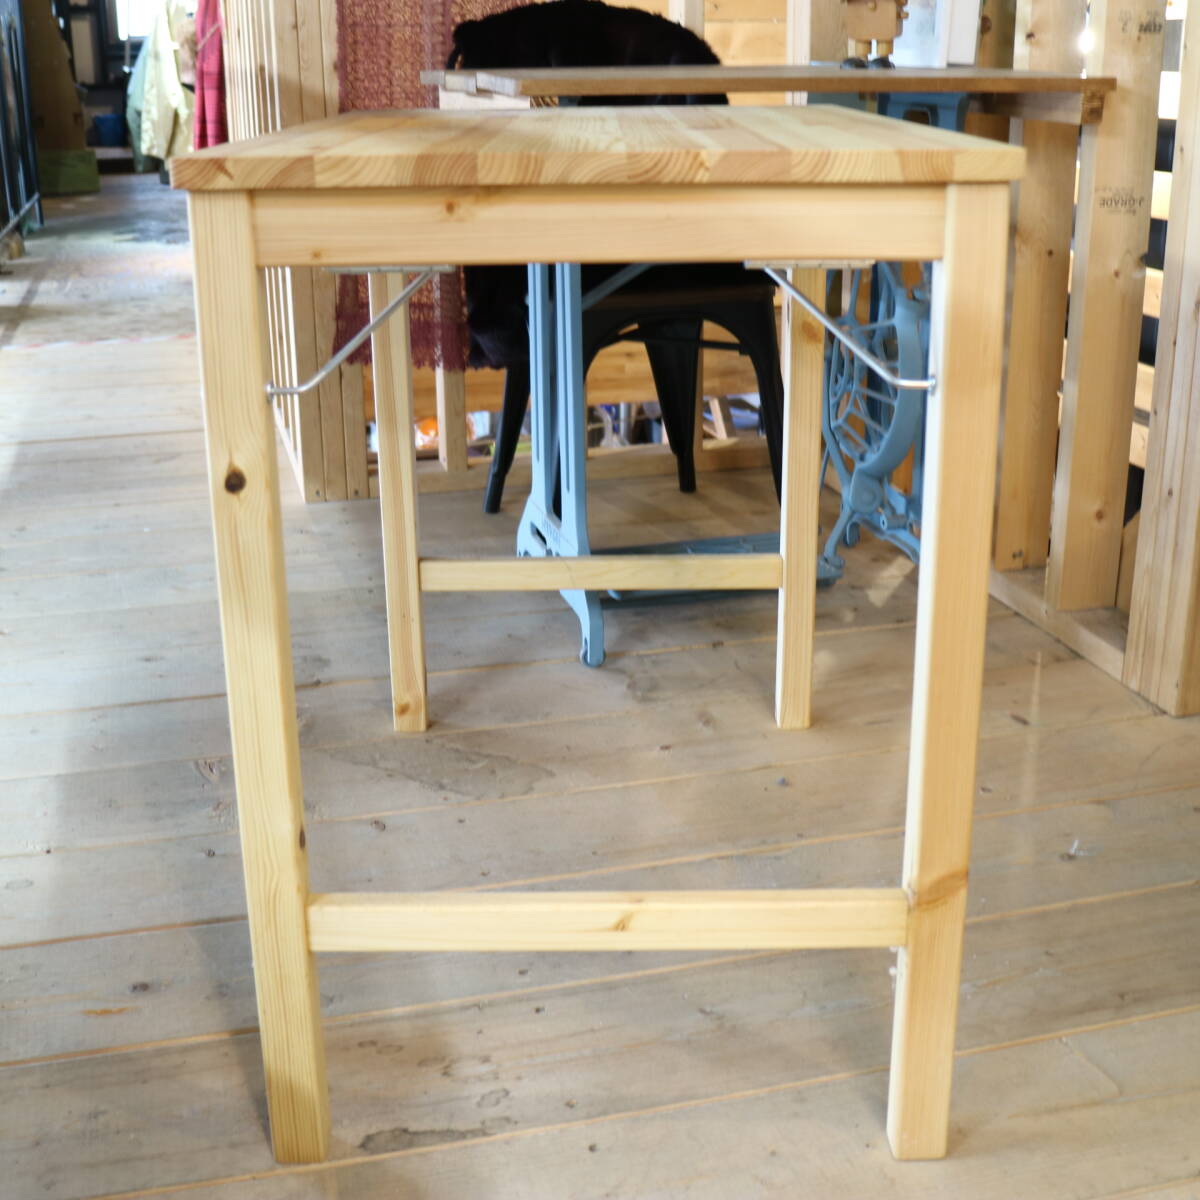  б/у нет печать план сосна материал складной стол из дерева W80xD50xH70cm жизнь мебель натуральное дерево интерьер 